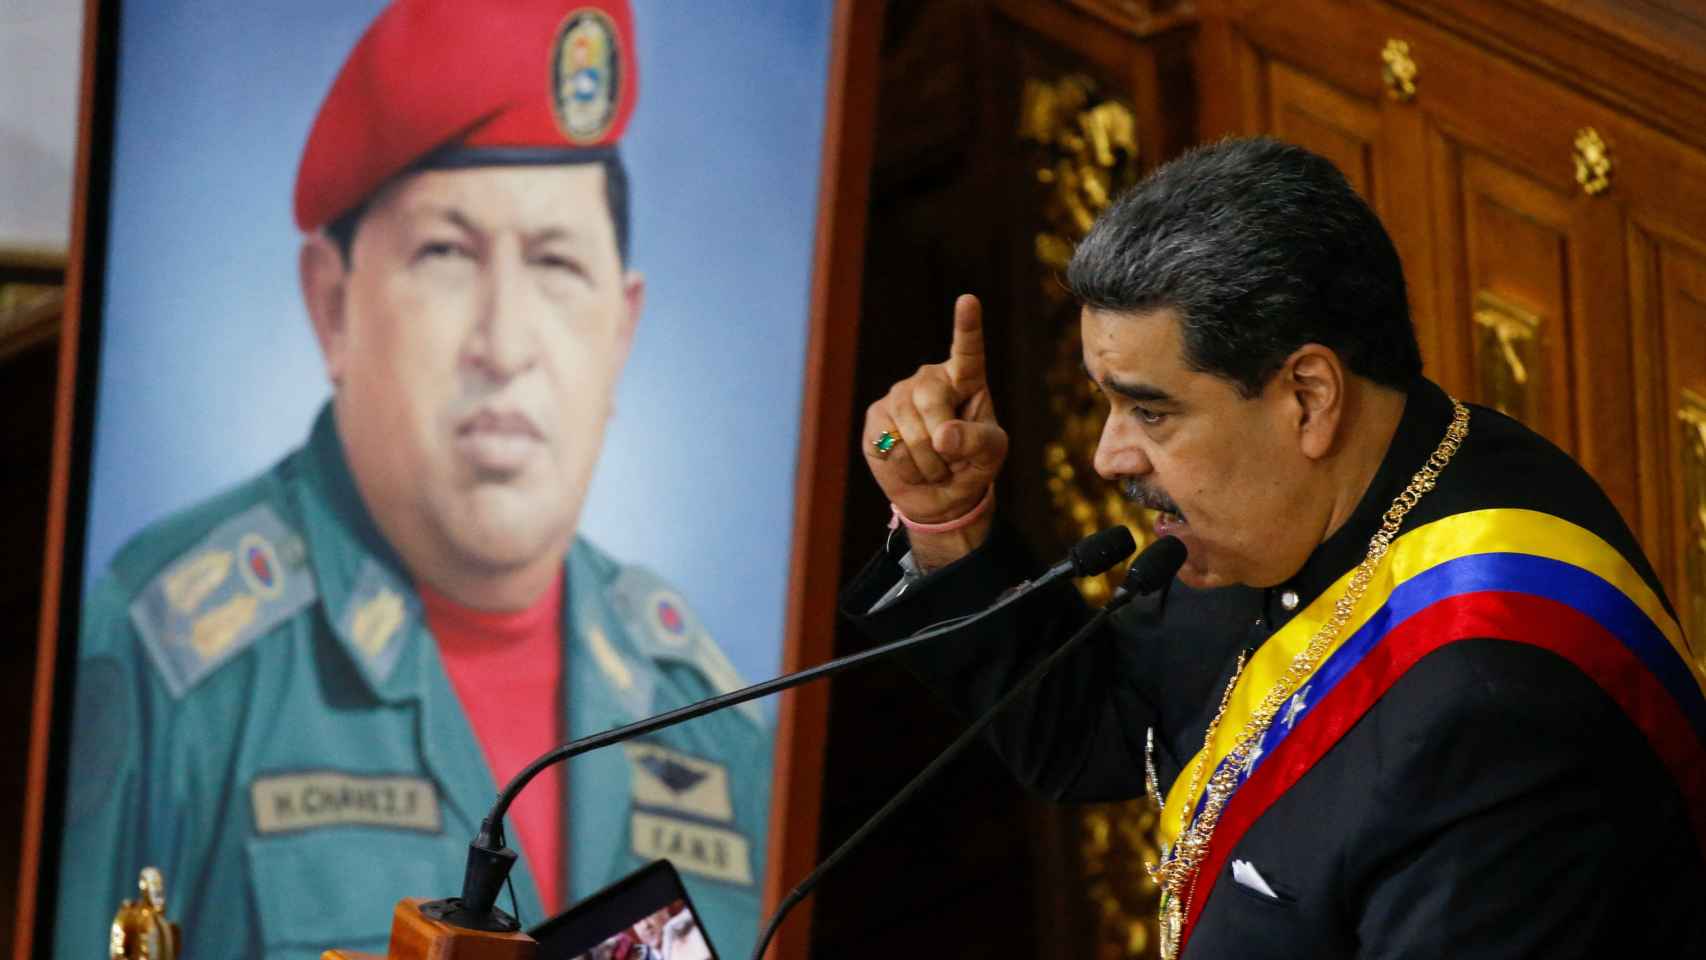 El exministro venezolano liberado por Maduro agradece a Zapatero su "gesto de solidaridad" thumbnail